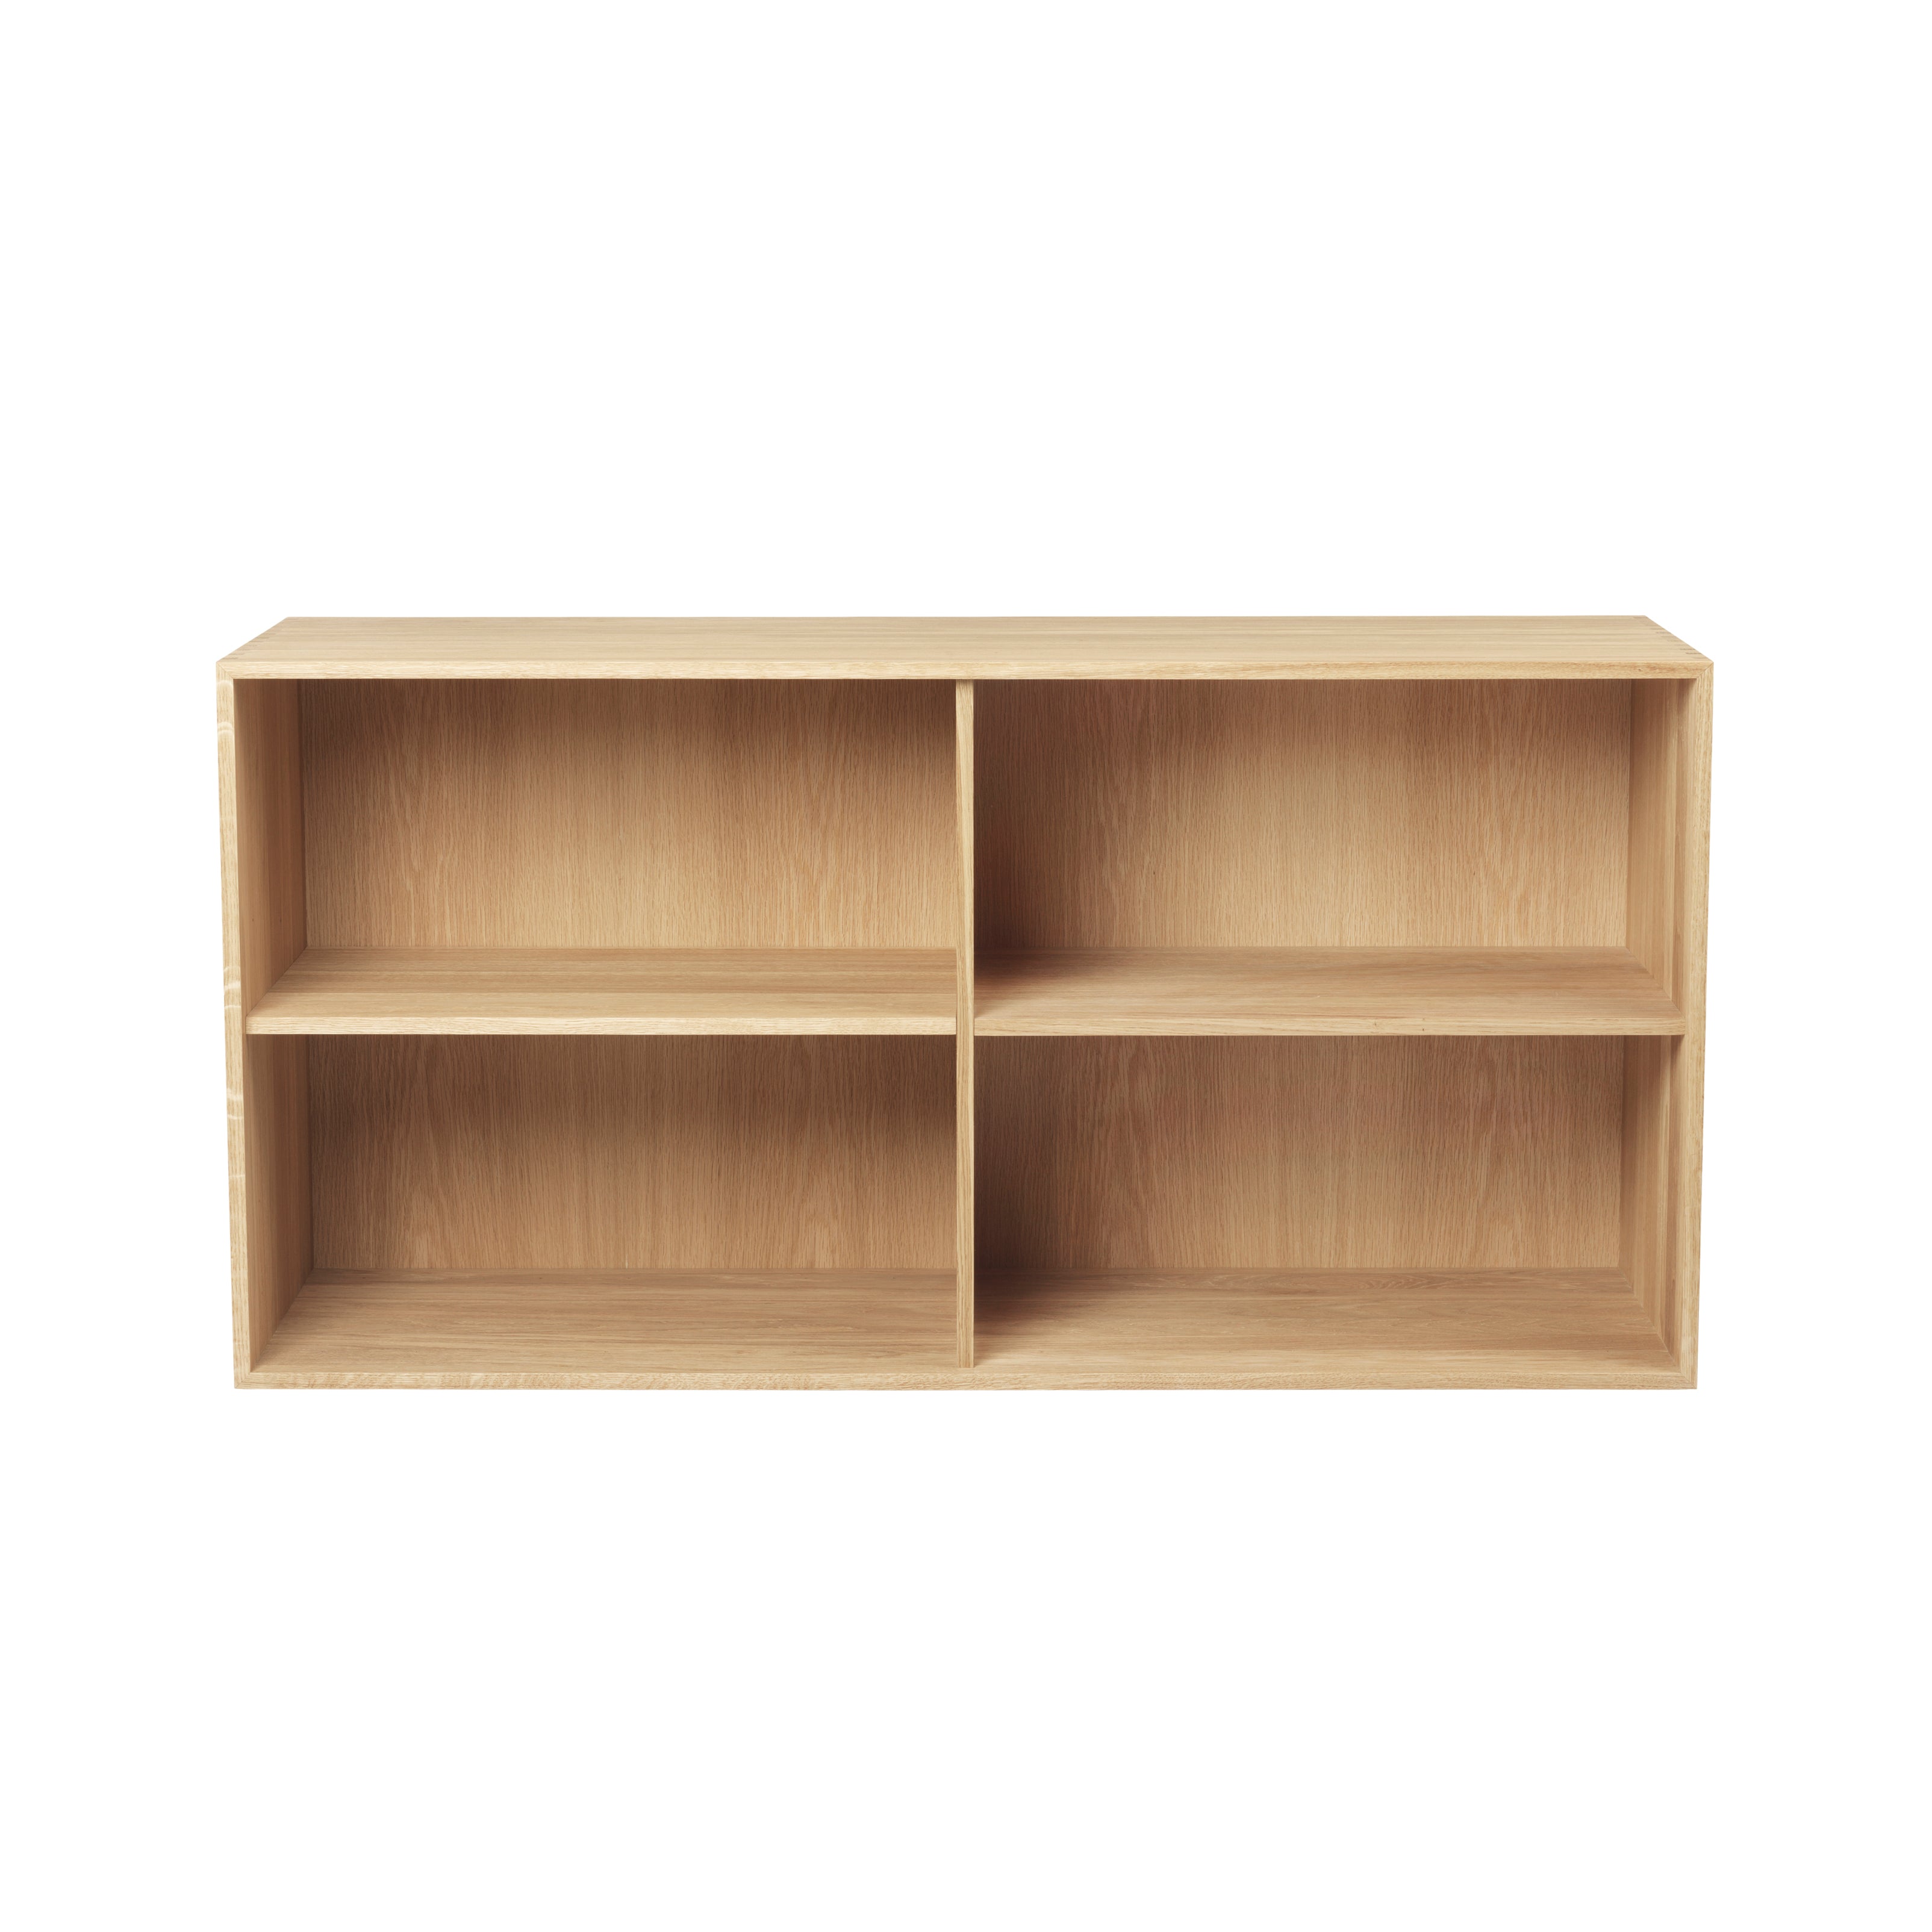 FK632110 Deep Bookcase + 2 Shelves: Oiled Oak